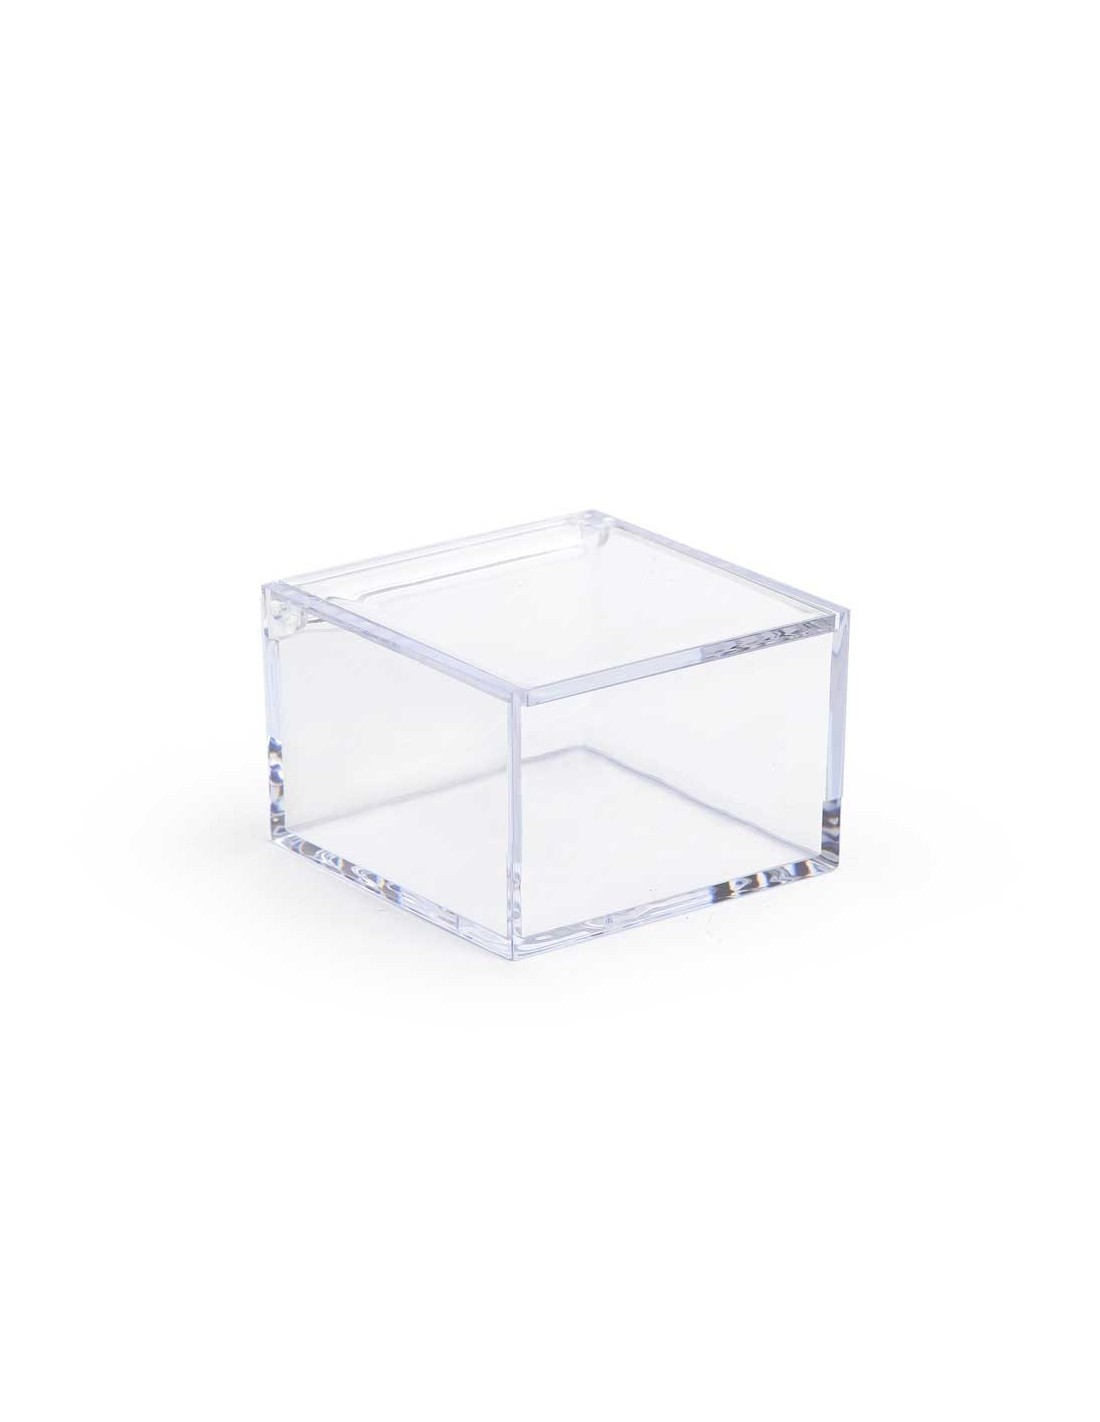 Scatolina in plexiglass trasparente 6x6x6 - Plexy Design